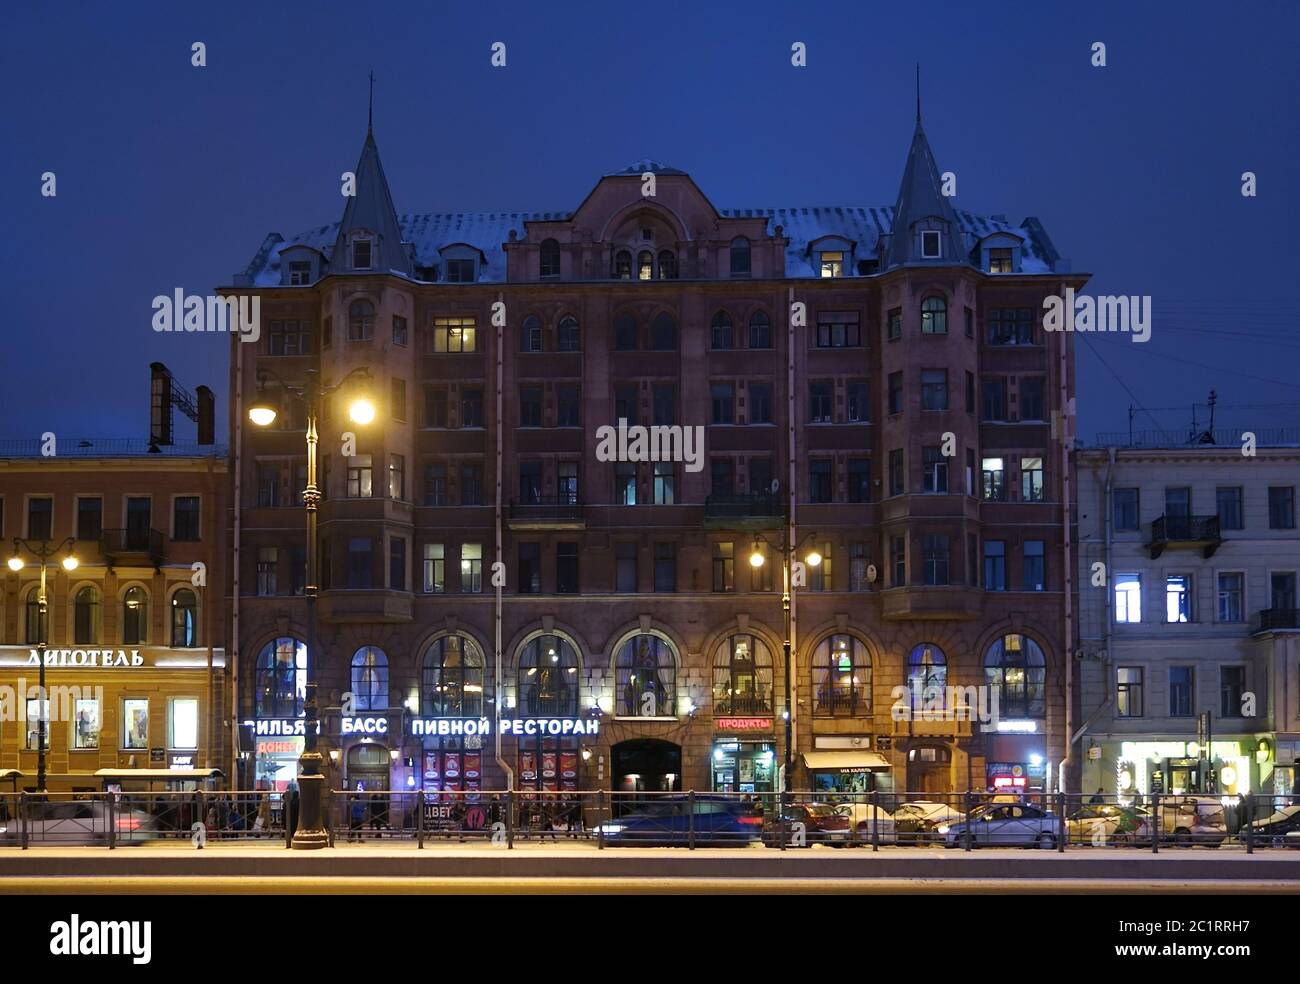 Soirée d'hiver et immeuble d'appartements de style Art nouveau sur la perspective Ligovsky Banque D'Images